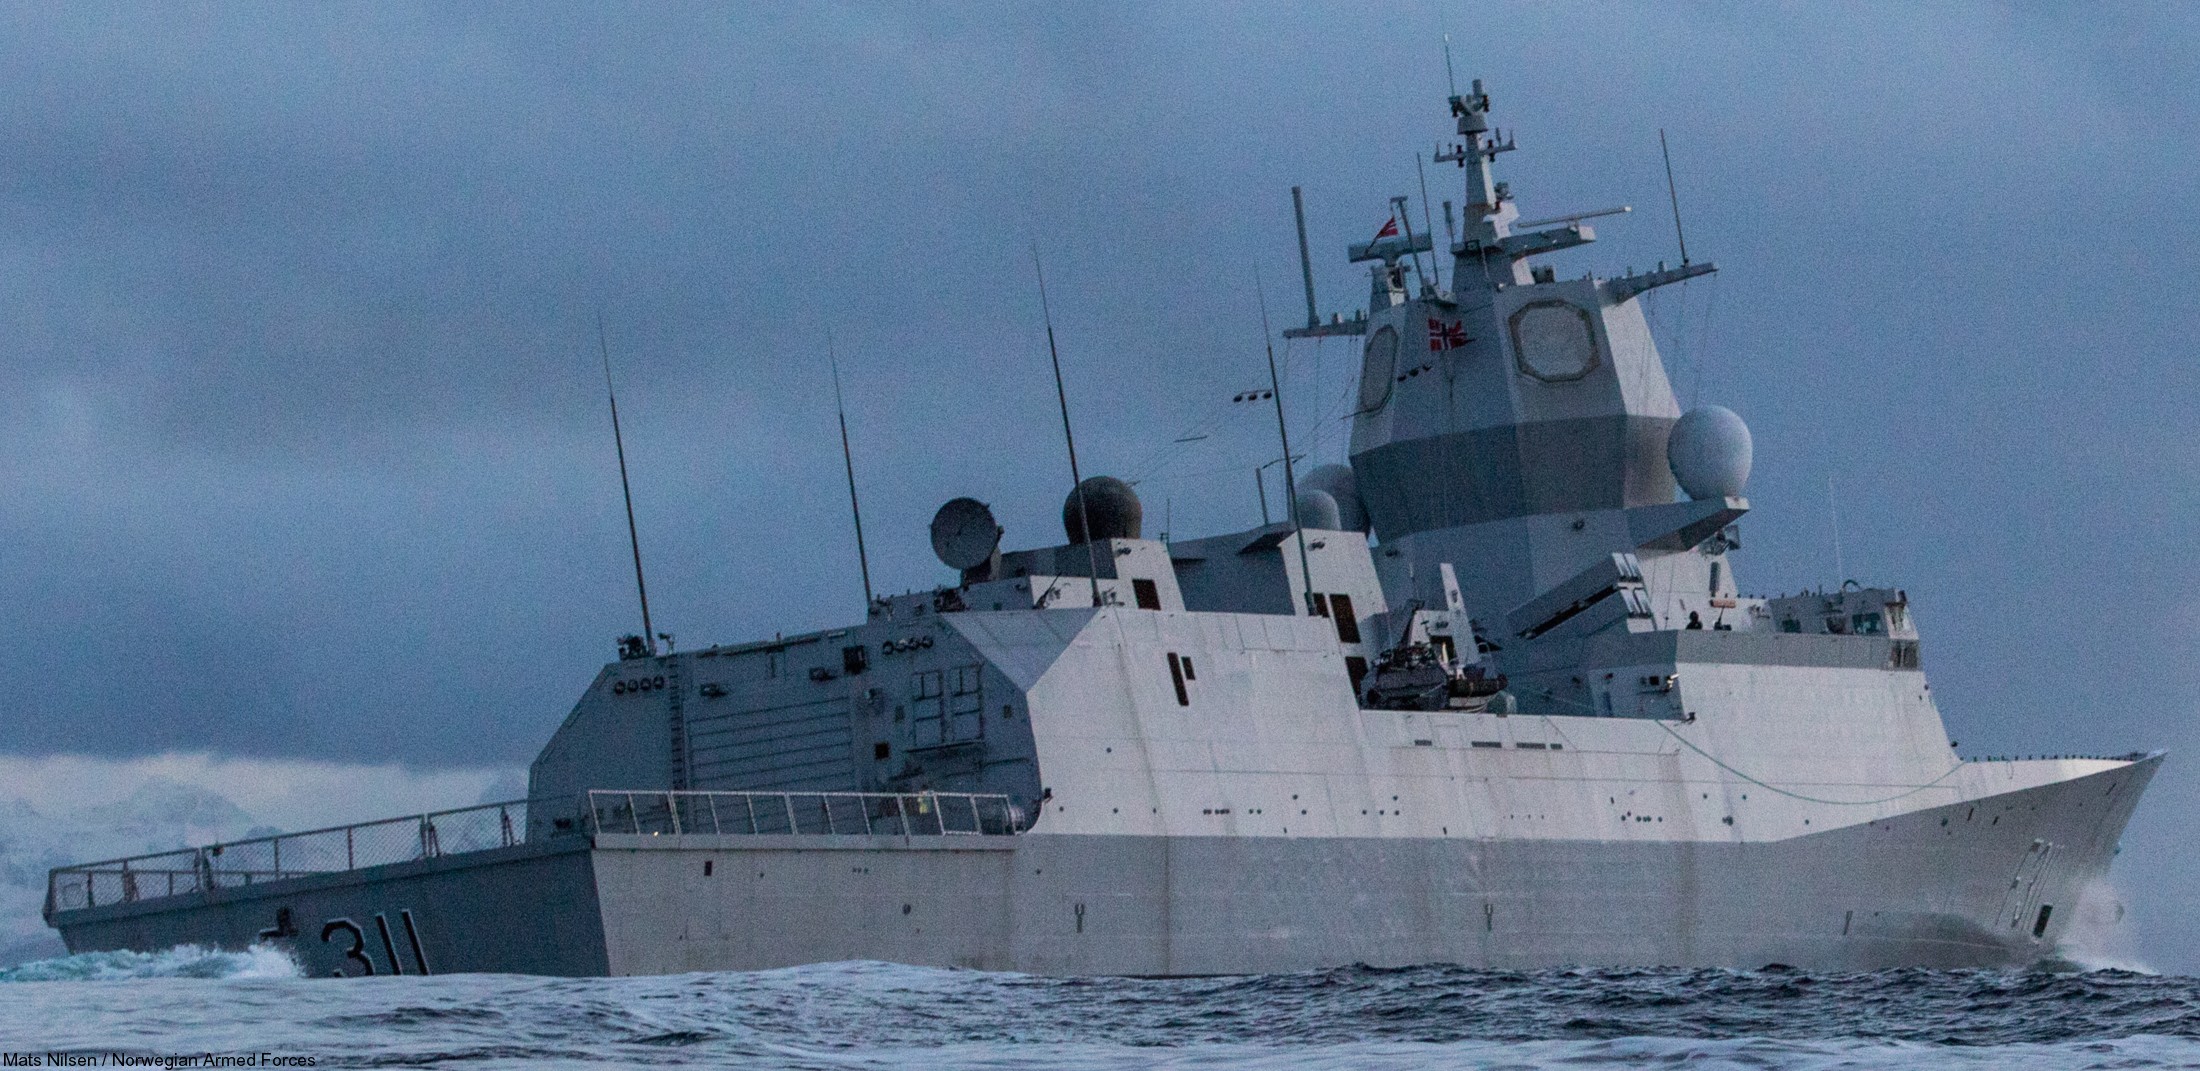 f-311 hnoms roald amundsen knm nansen class frigate royal norwegian navy sjoforsvaret 19